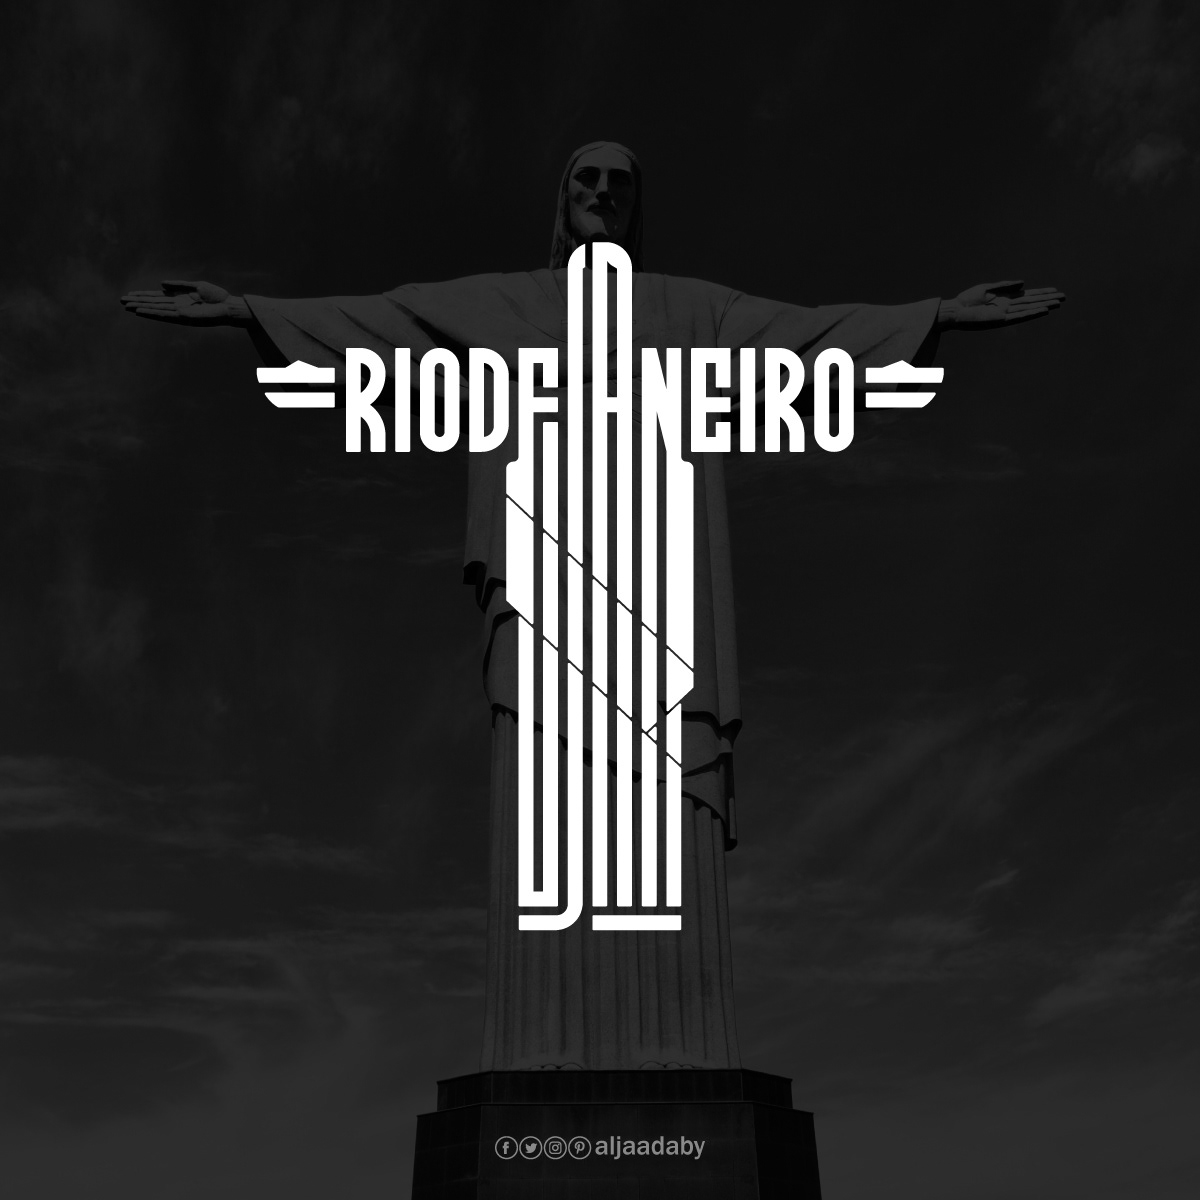 Typographic city logos based on their famous landmarks - Rio de Janeiro